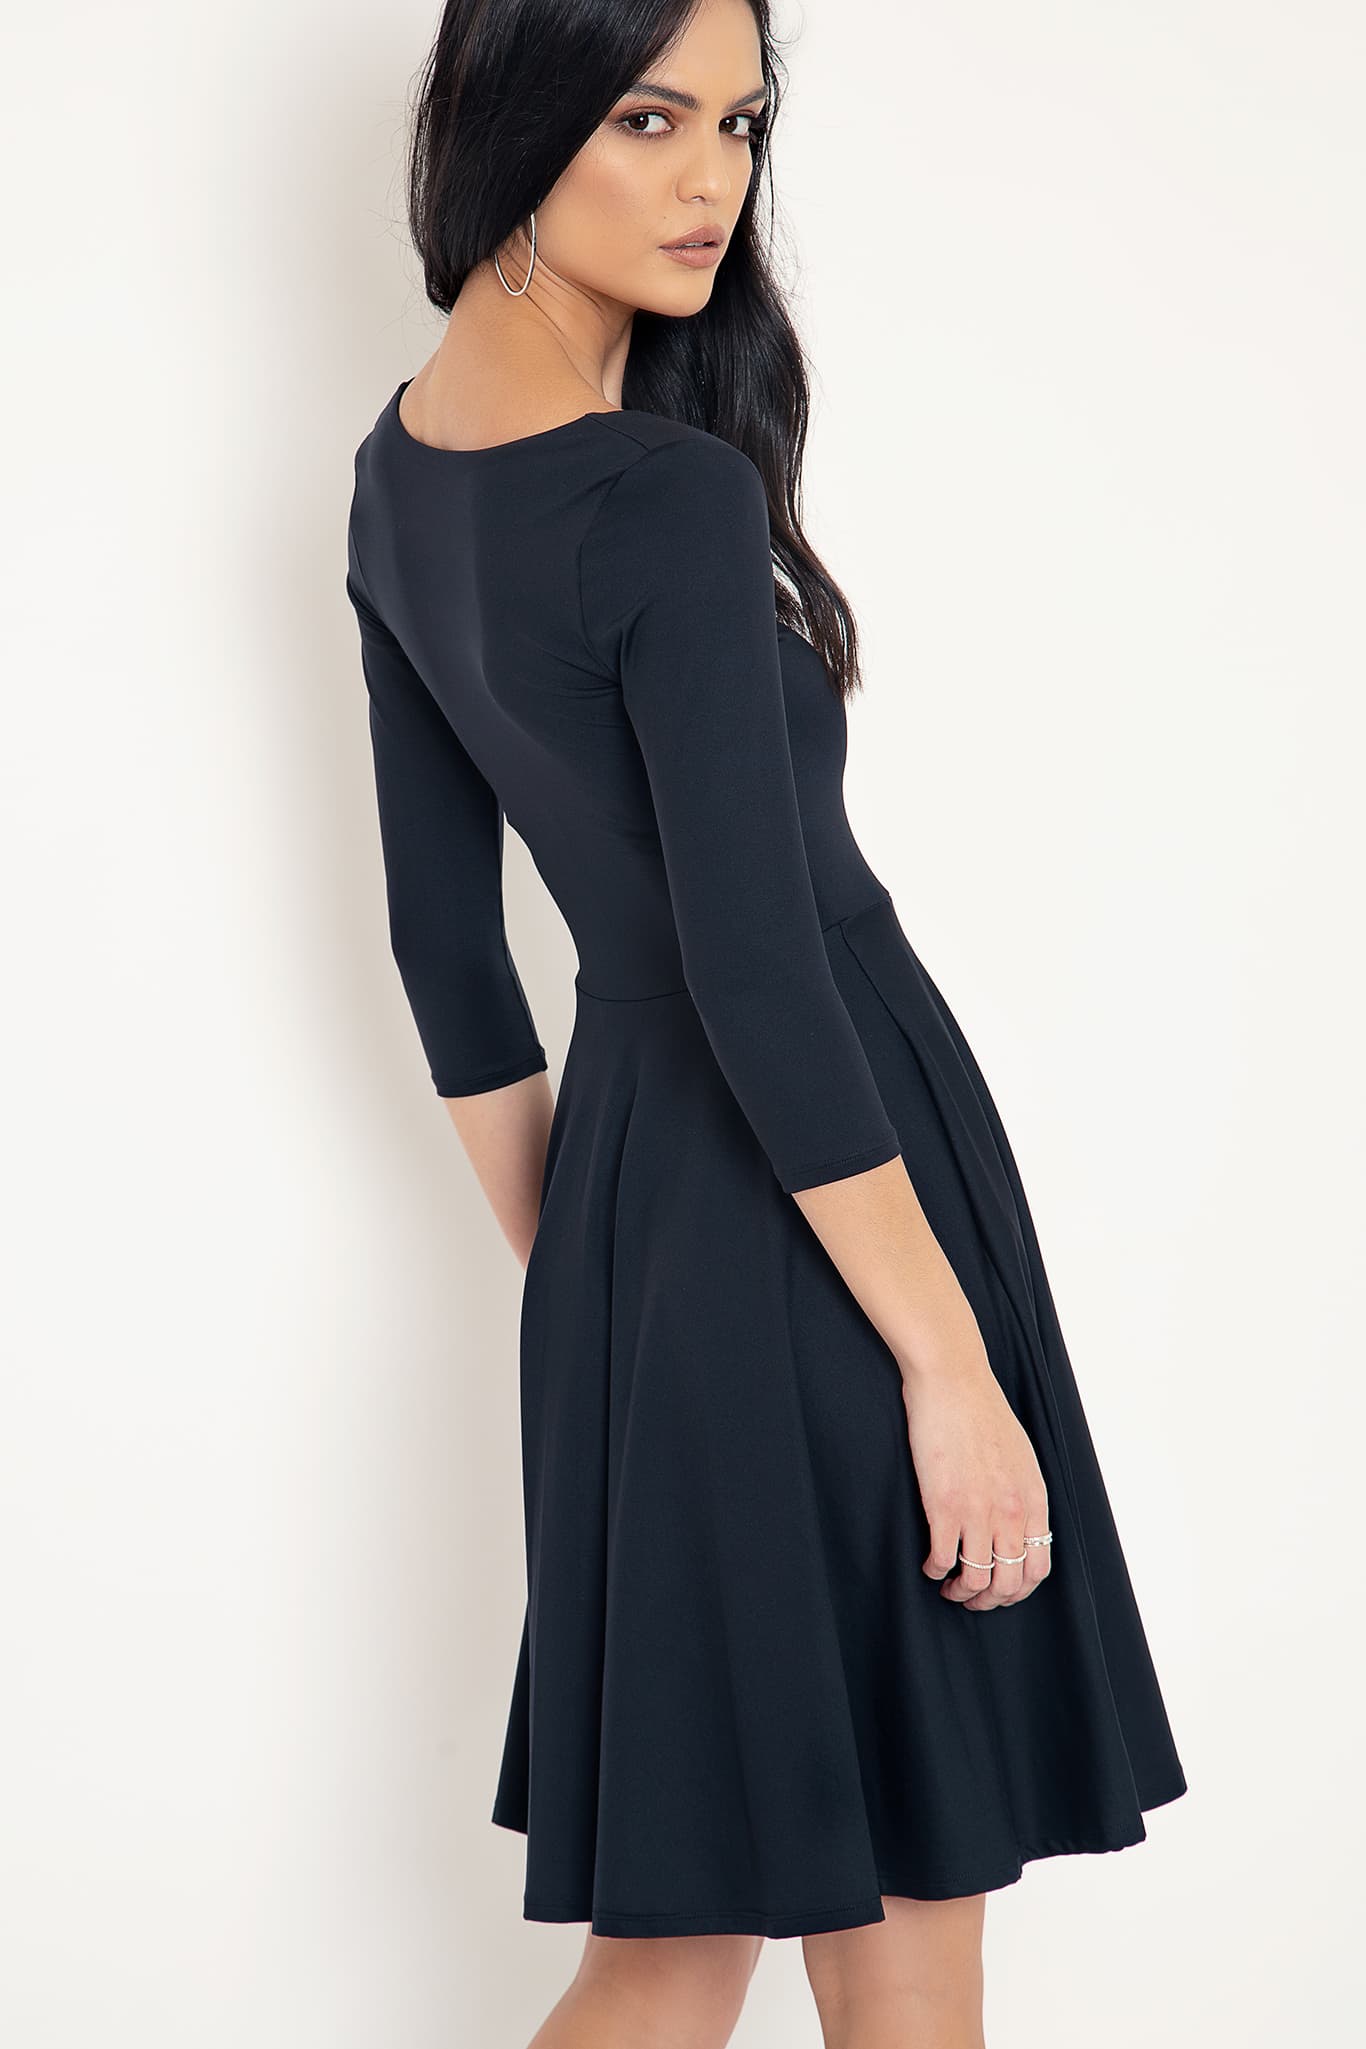 Matte Black Heart 3/4 Sleeve Longline Dress - Limited